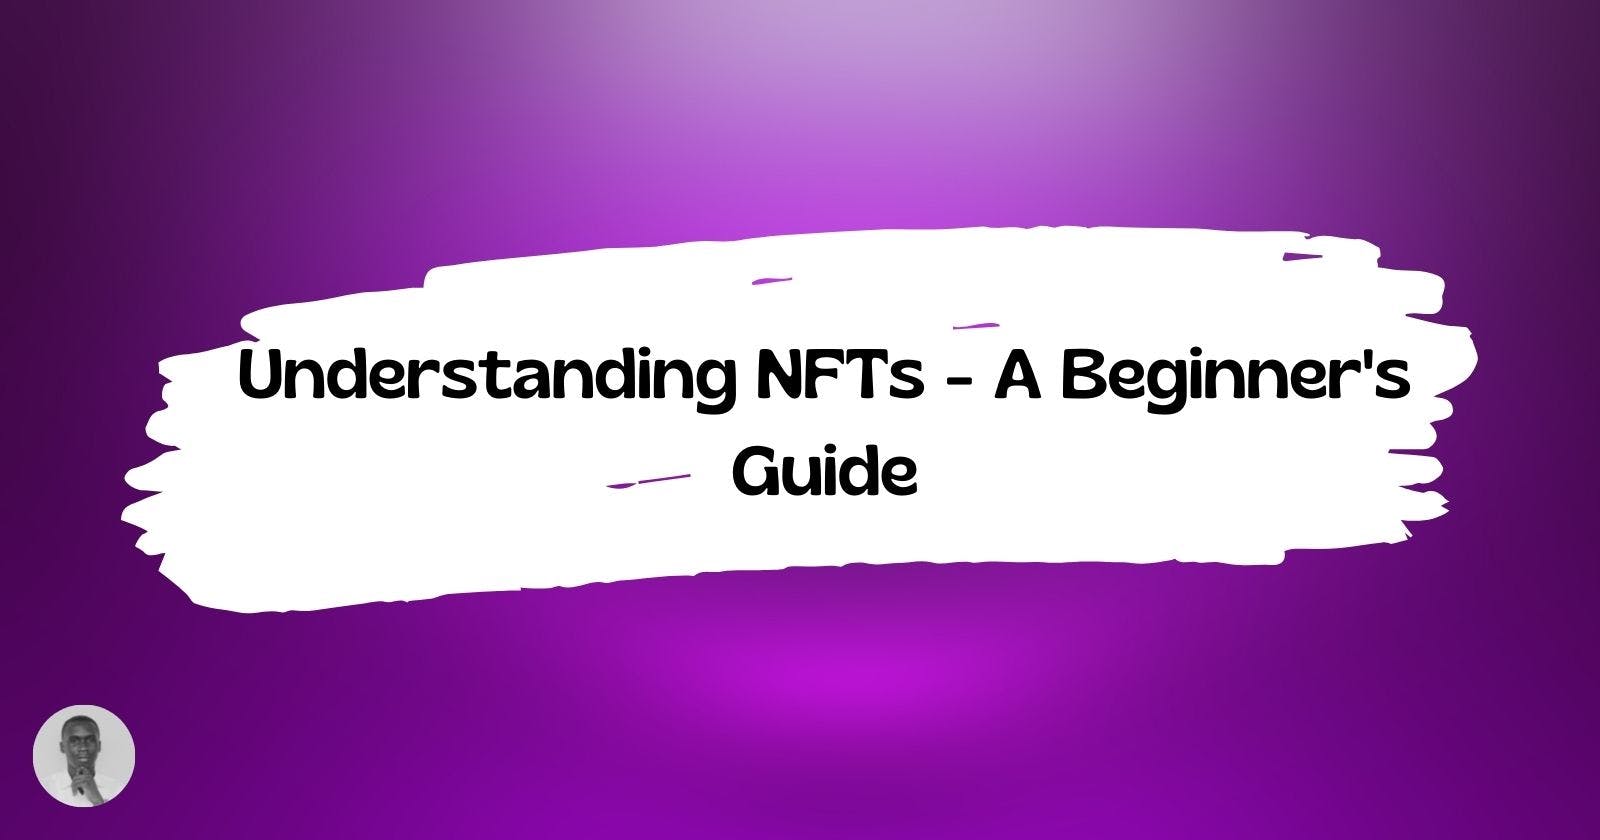 Understanding NFTs - A Beginner's Guide